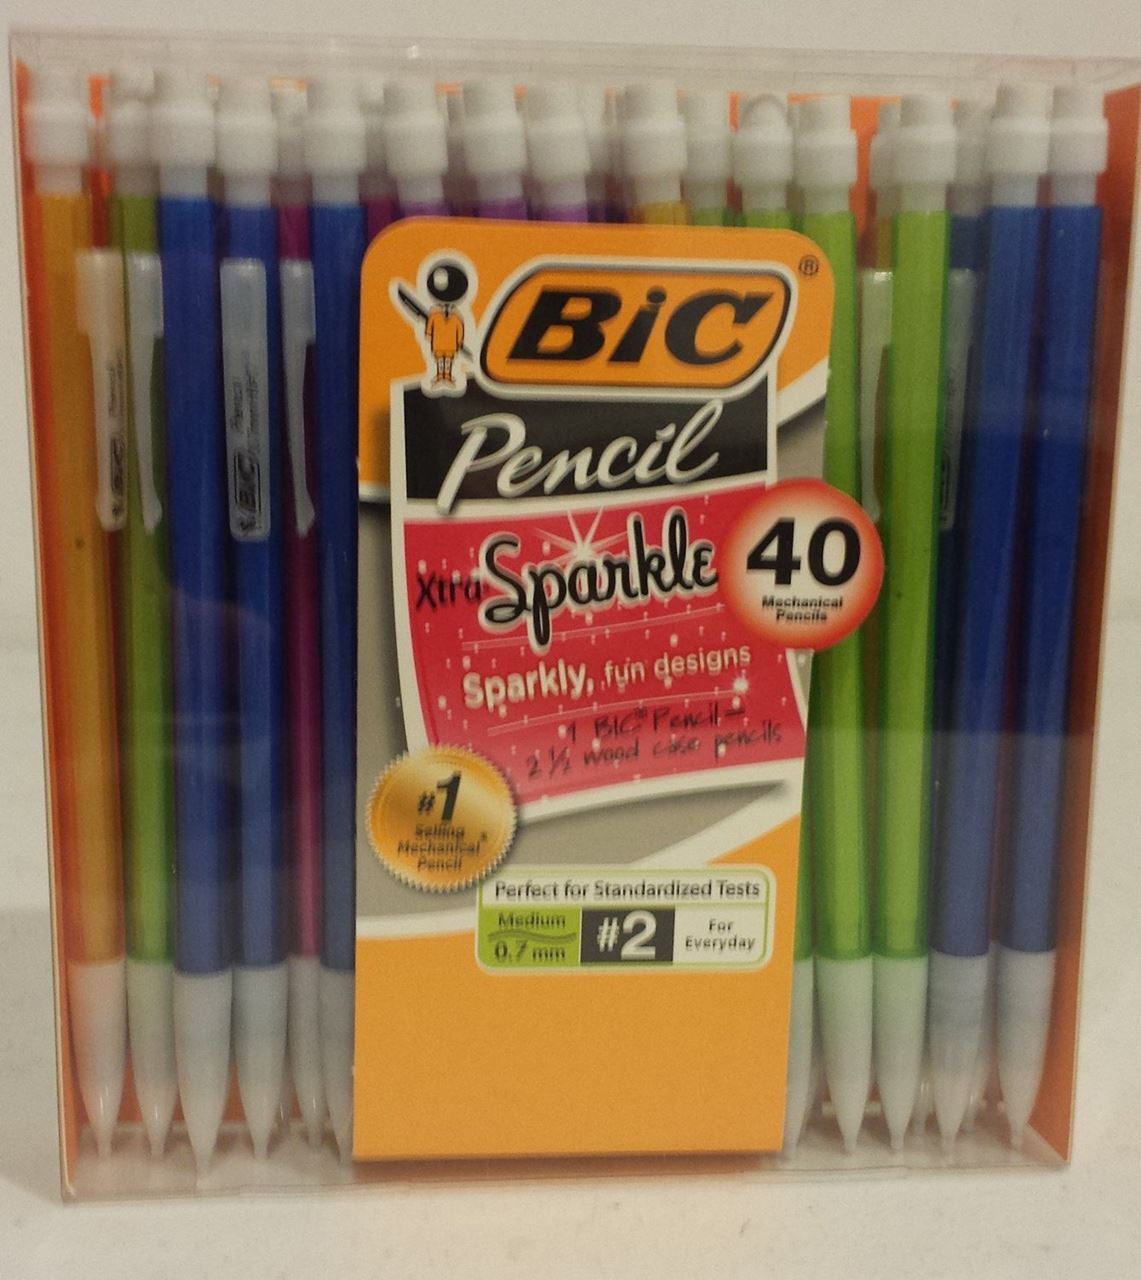 Pilot G2 Retractable Premium Gel Ink Pens, Select Color (Bold, 12